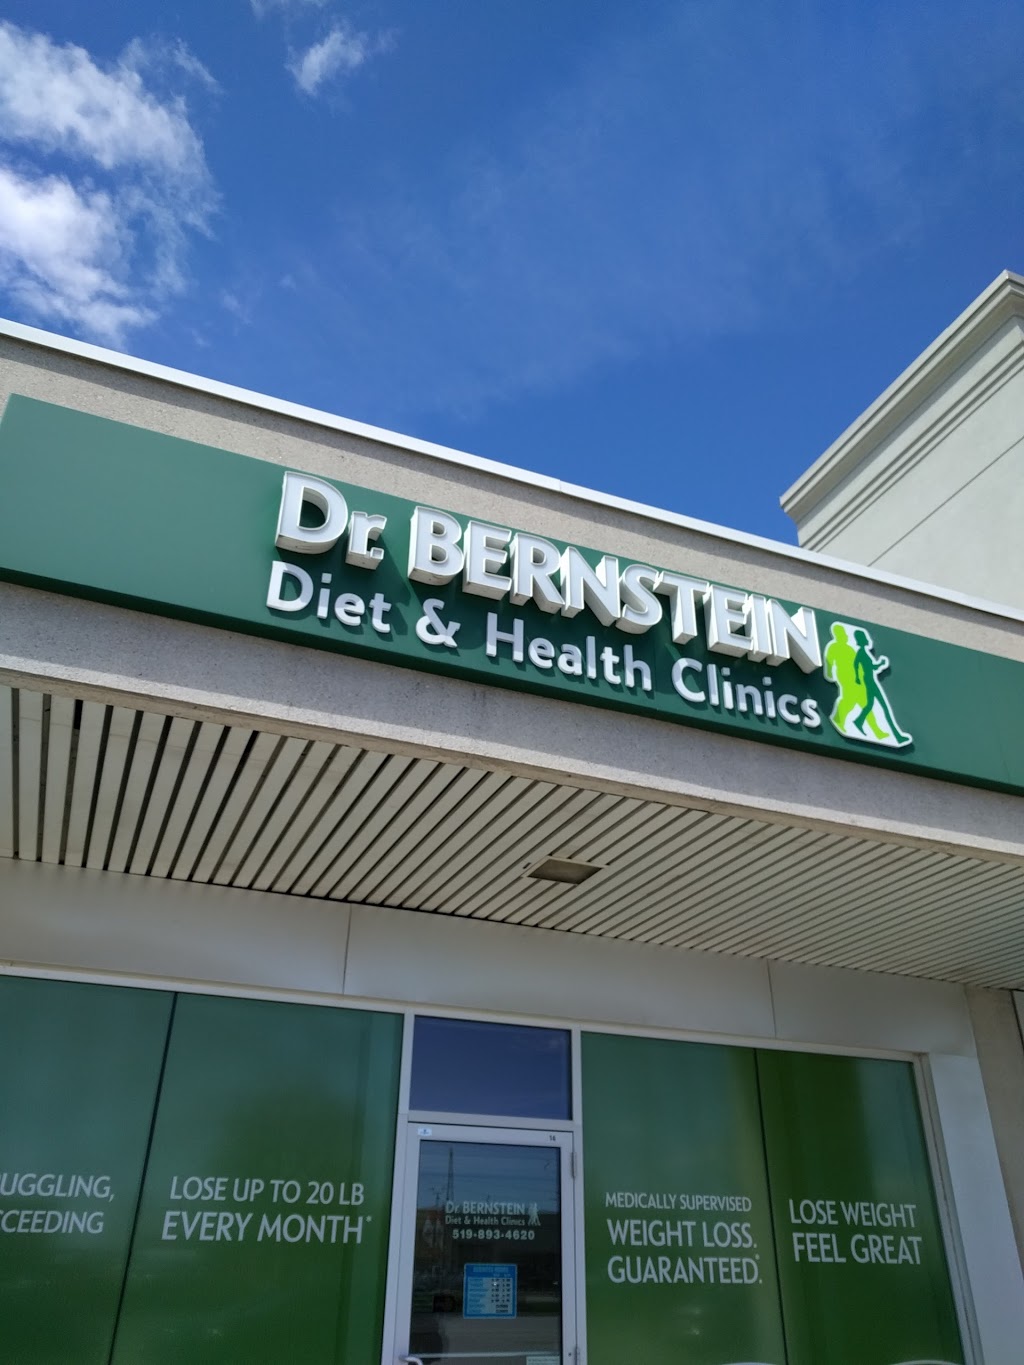 Bernstein Diet and Health Clinics | 500 Fairway Rd S a17, Kitchener, ON N2C 1X3, Canada | Phone: (519) 893-4620